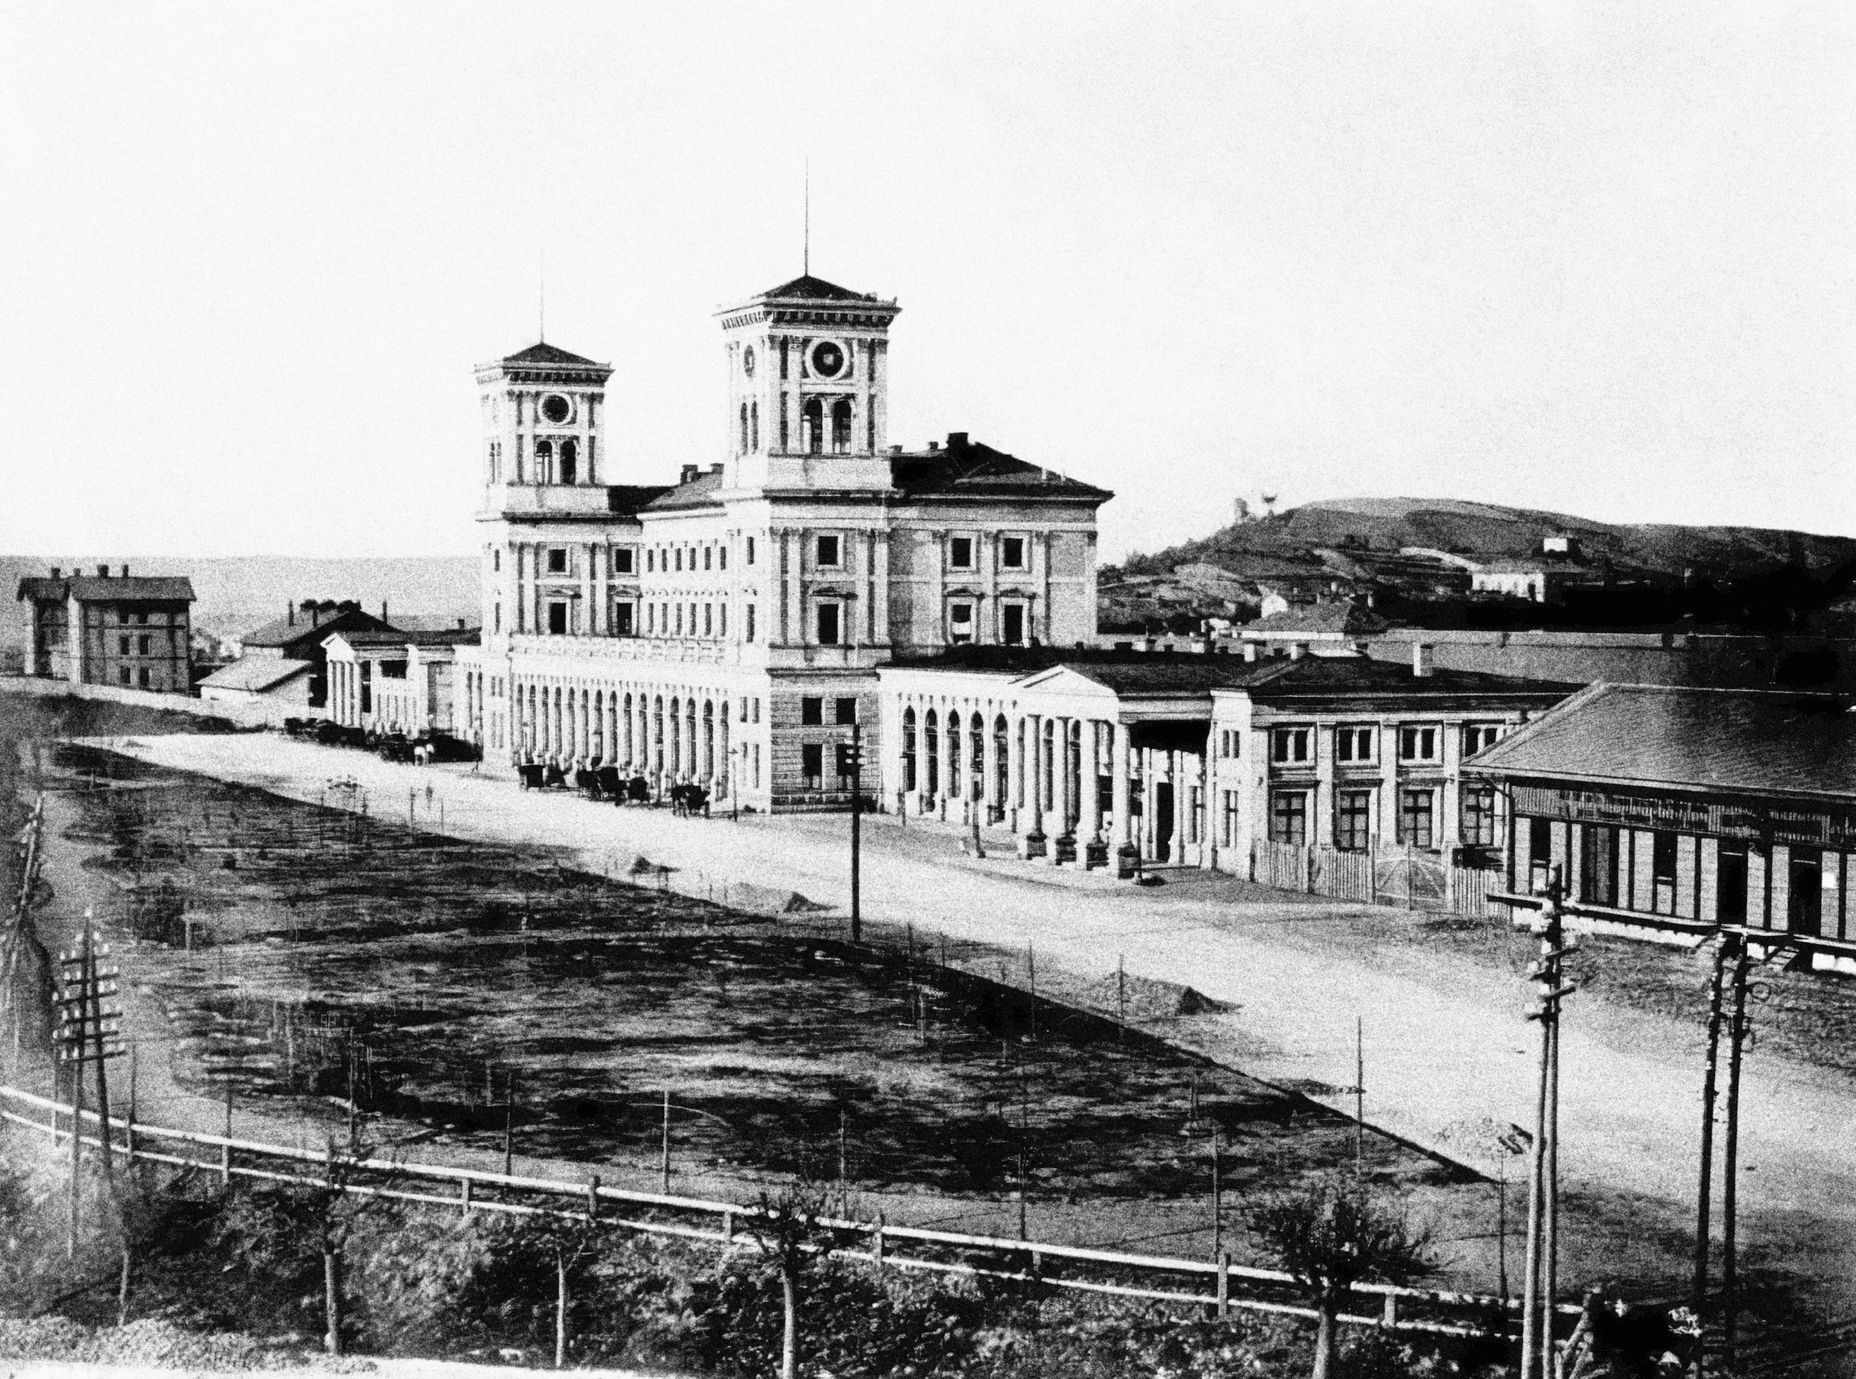 Hlavní nádraží - historické fotografie